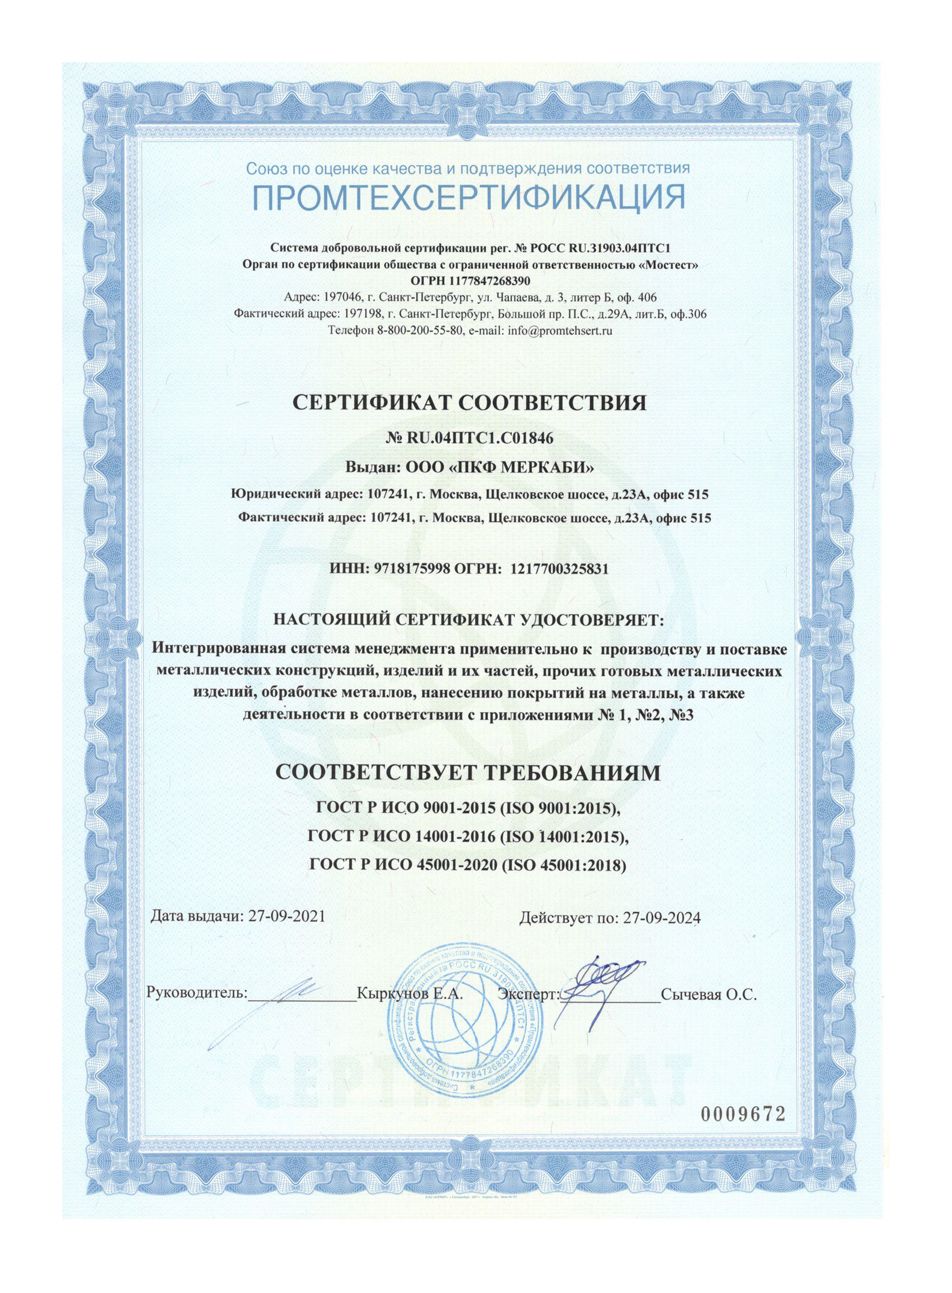 Сертификат соответствия № RU.04ПТС1.С01846 ISO 9001:2015